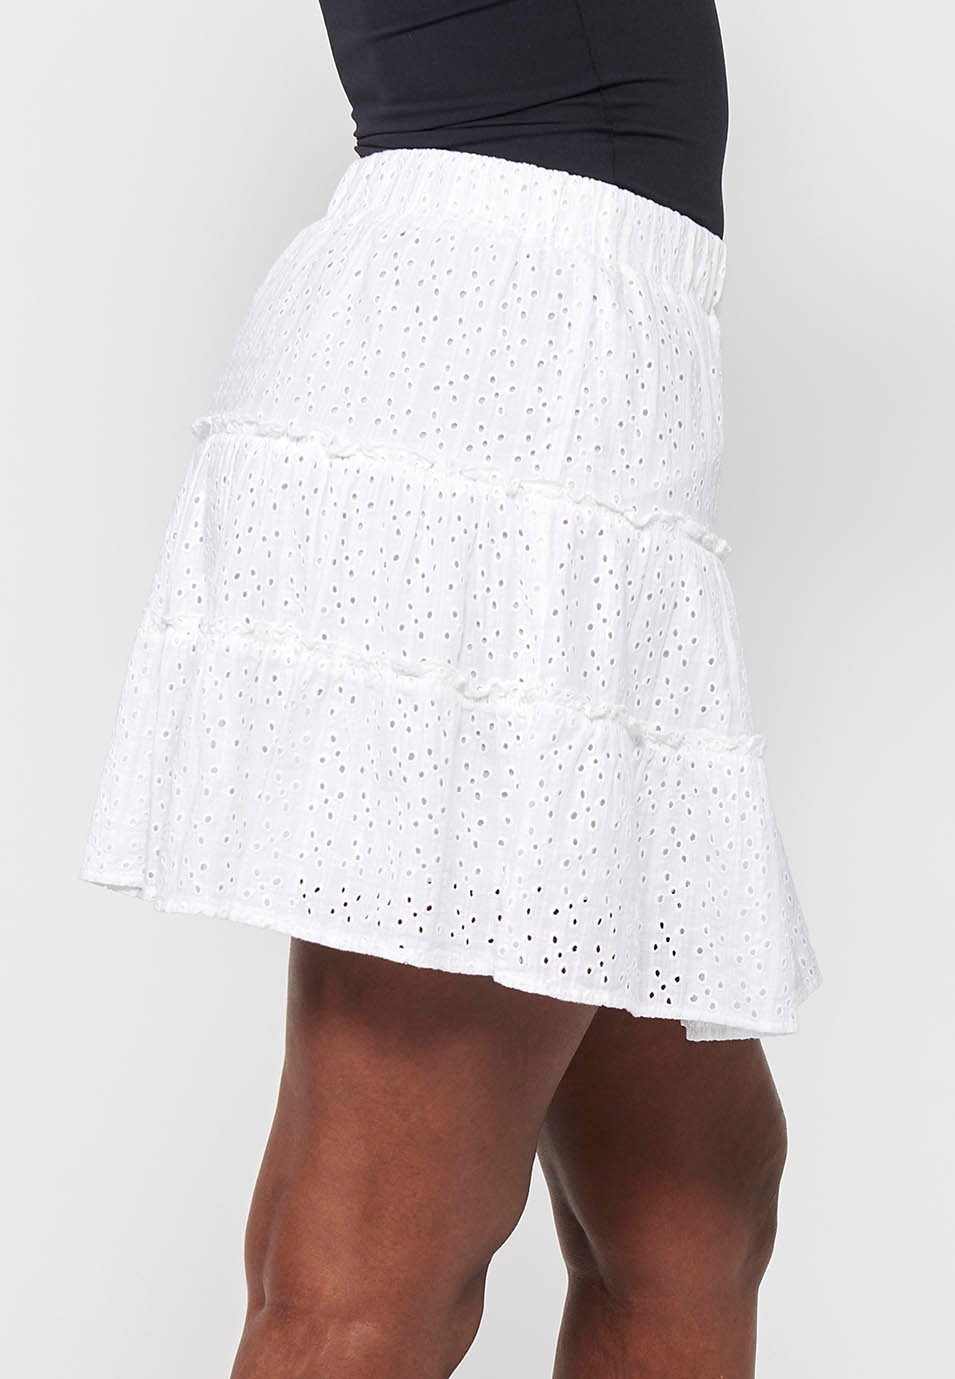 Jupe courte en coton, avec volant et broderie, ajustée à la taille avec élastique, coloris blanc pour femme